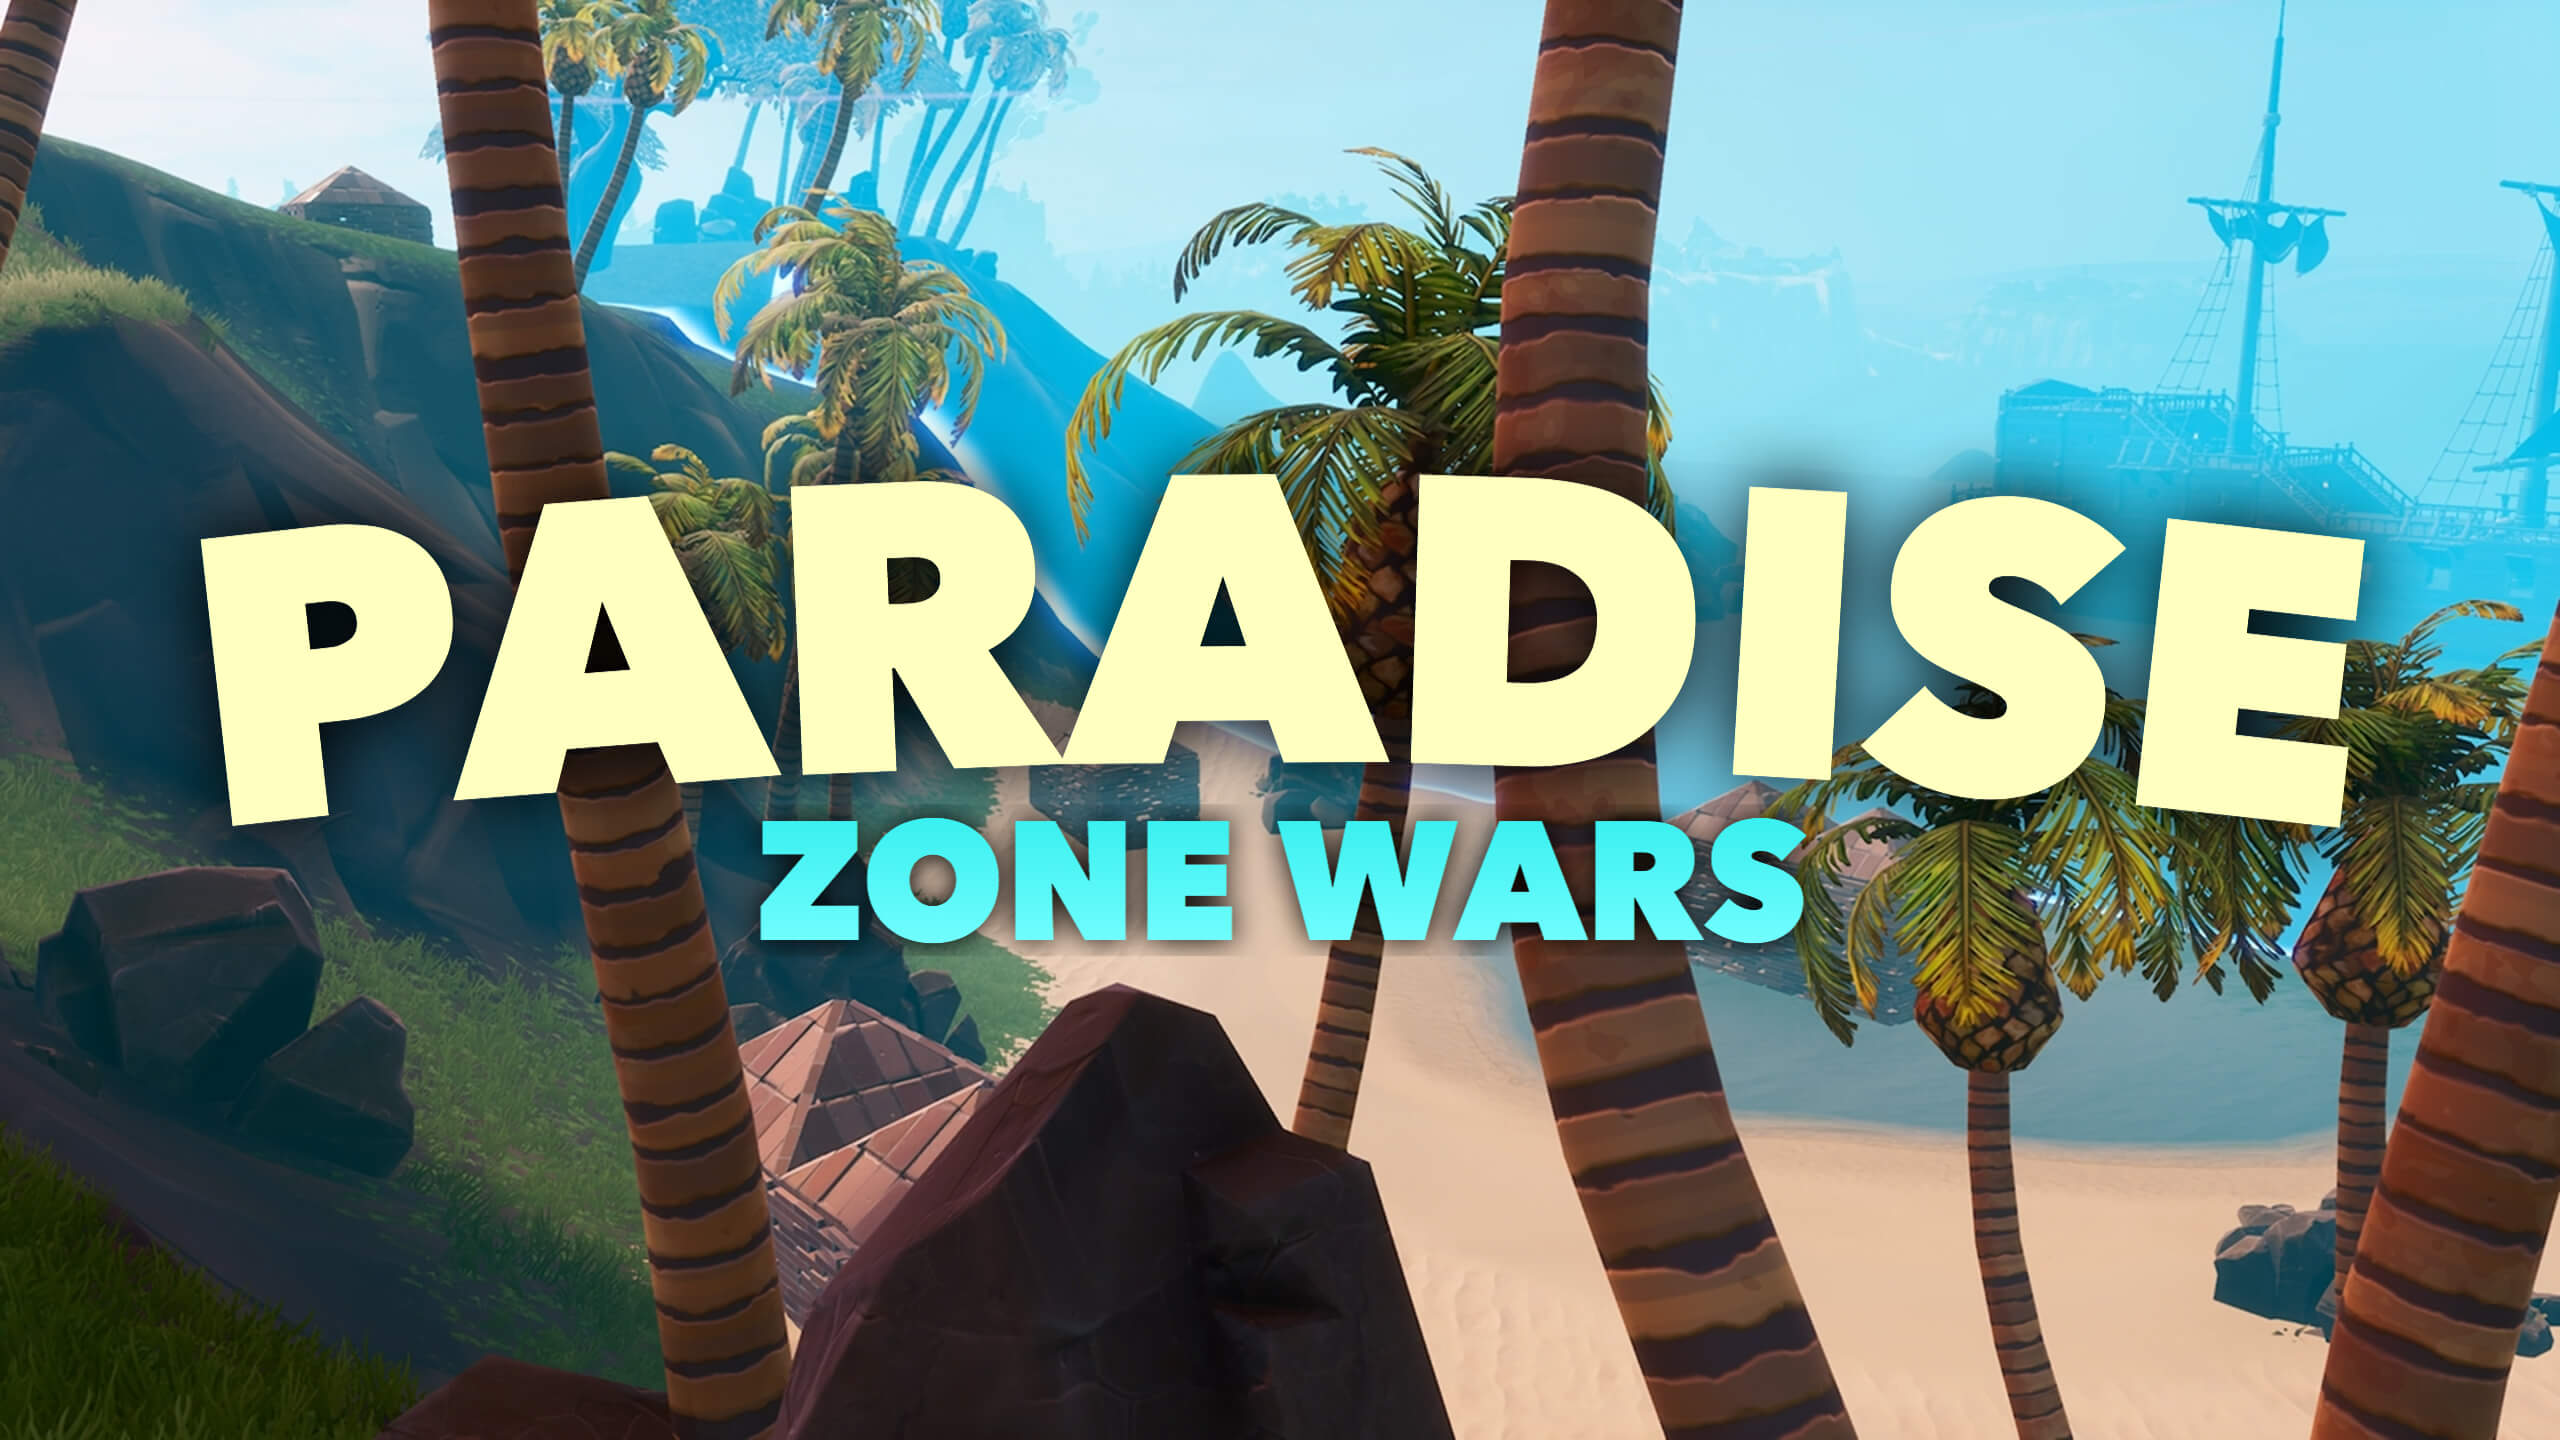 FIJI'S PARADISE ZONE WARS (1.0)